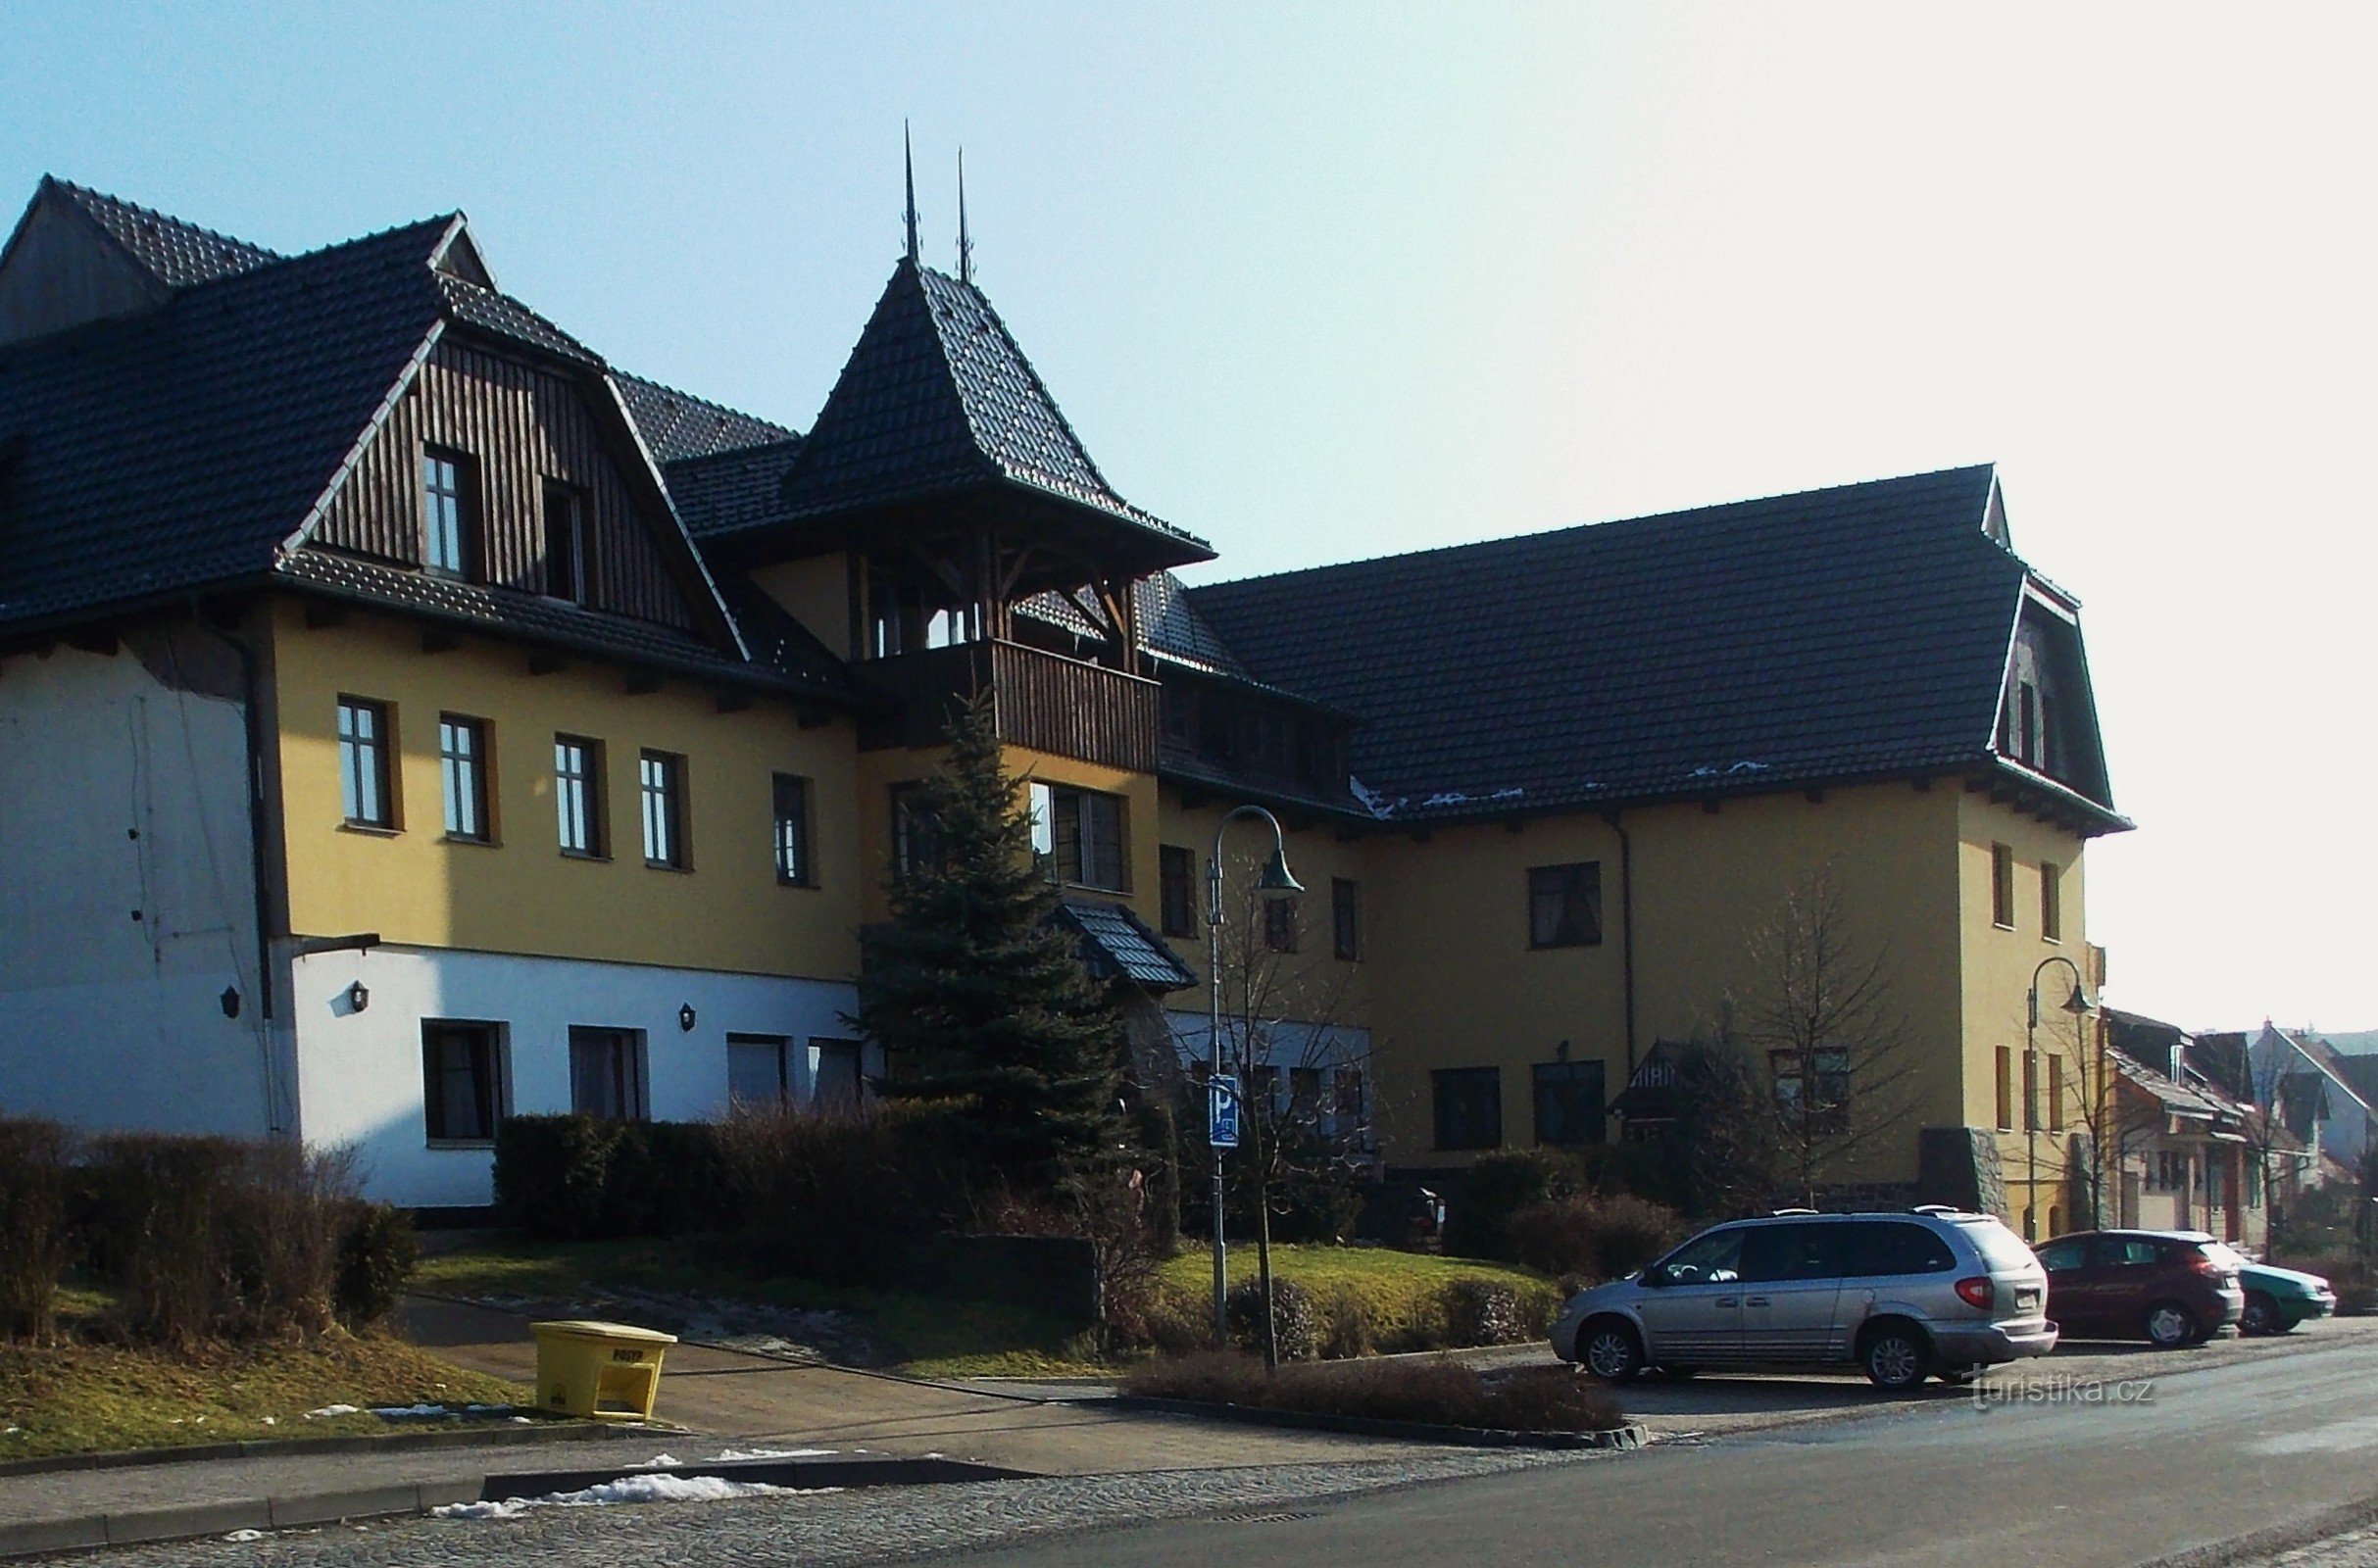 Valašský šenk 和 Hotel Ogar 位于 Luhačovice 附近的 Pozlovice